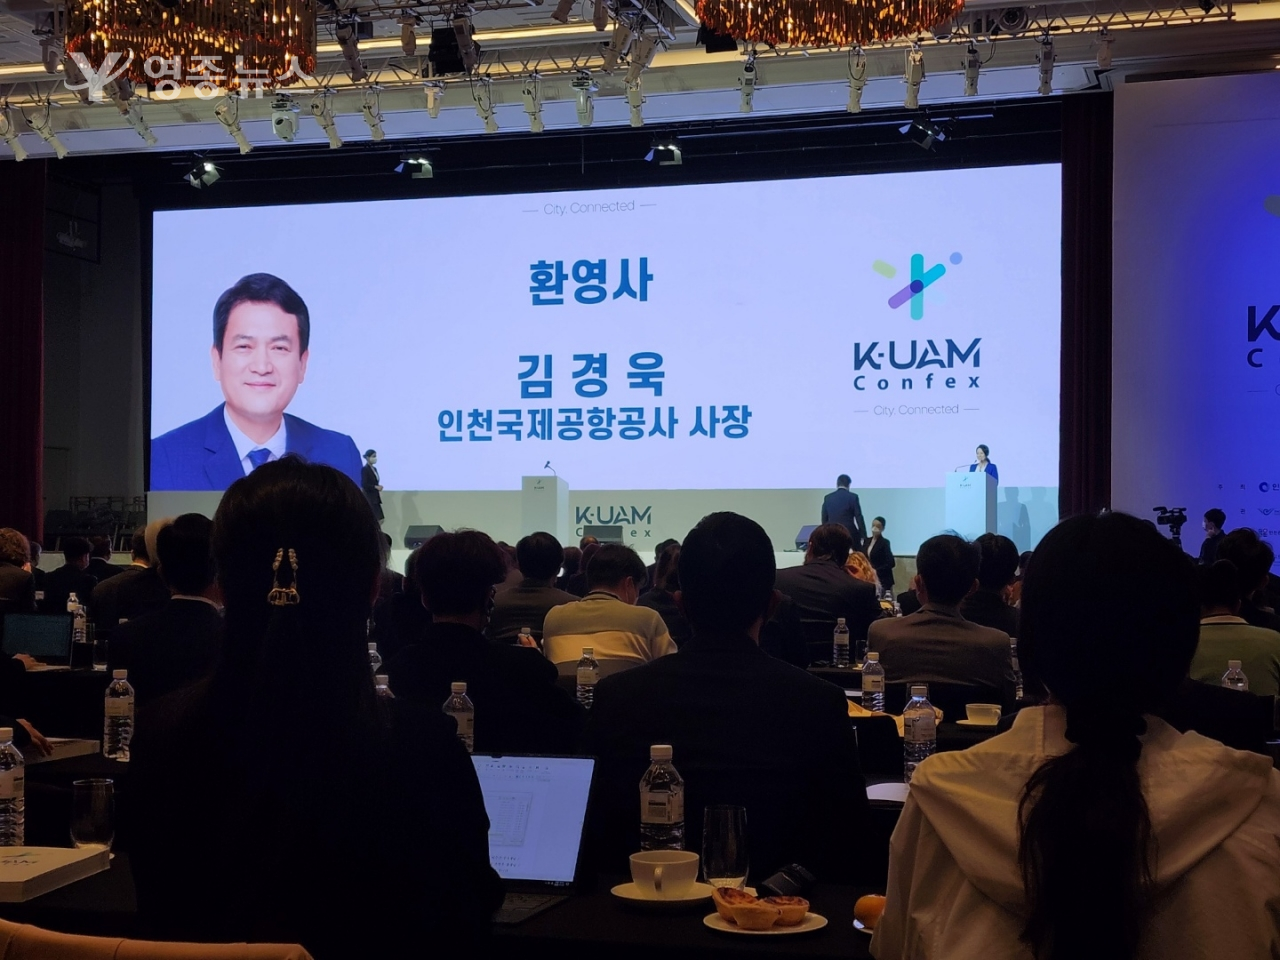 인천공항, 제2회 K-UAM Confex 개최!